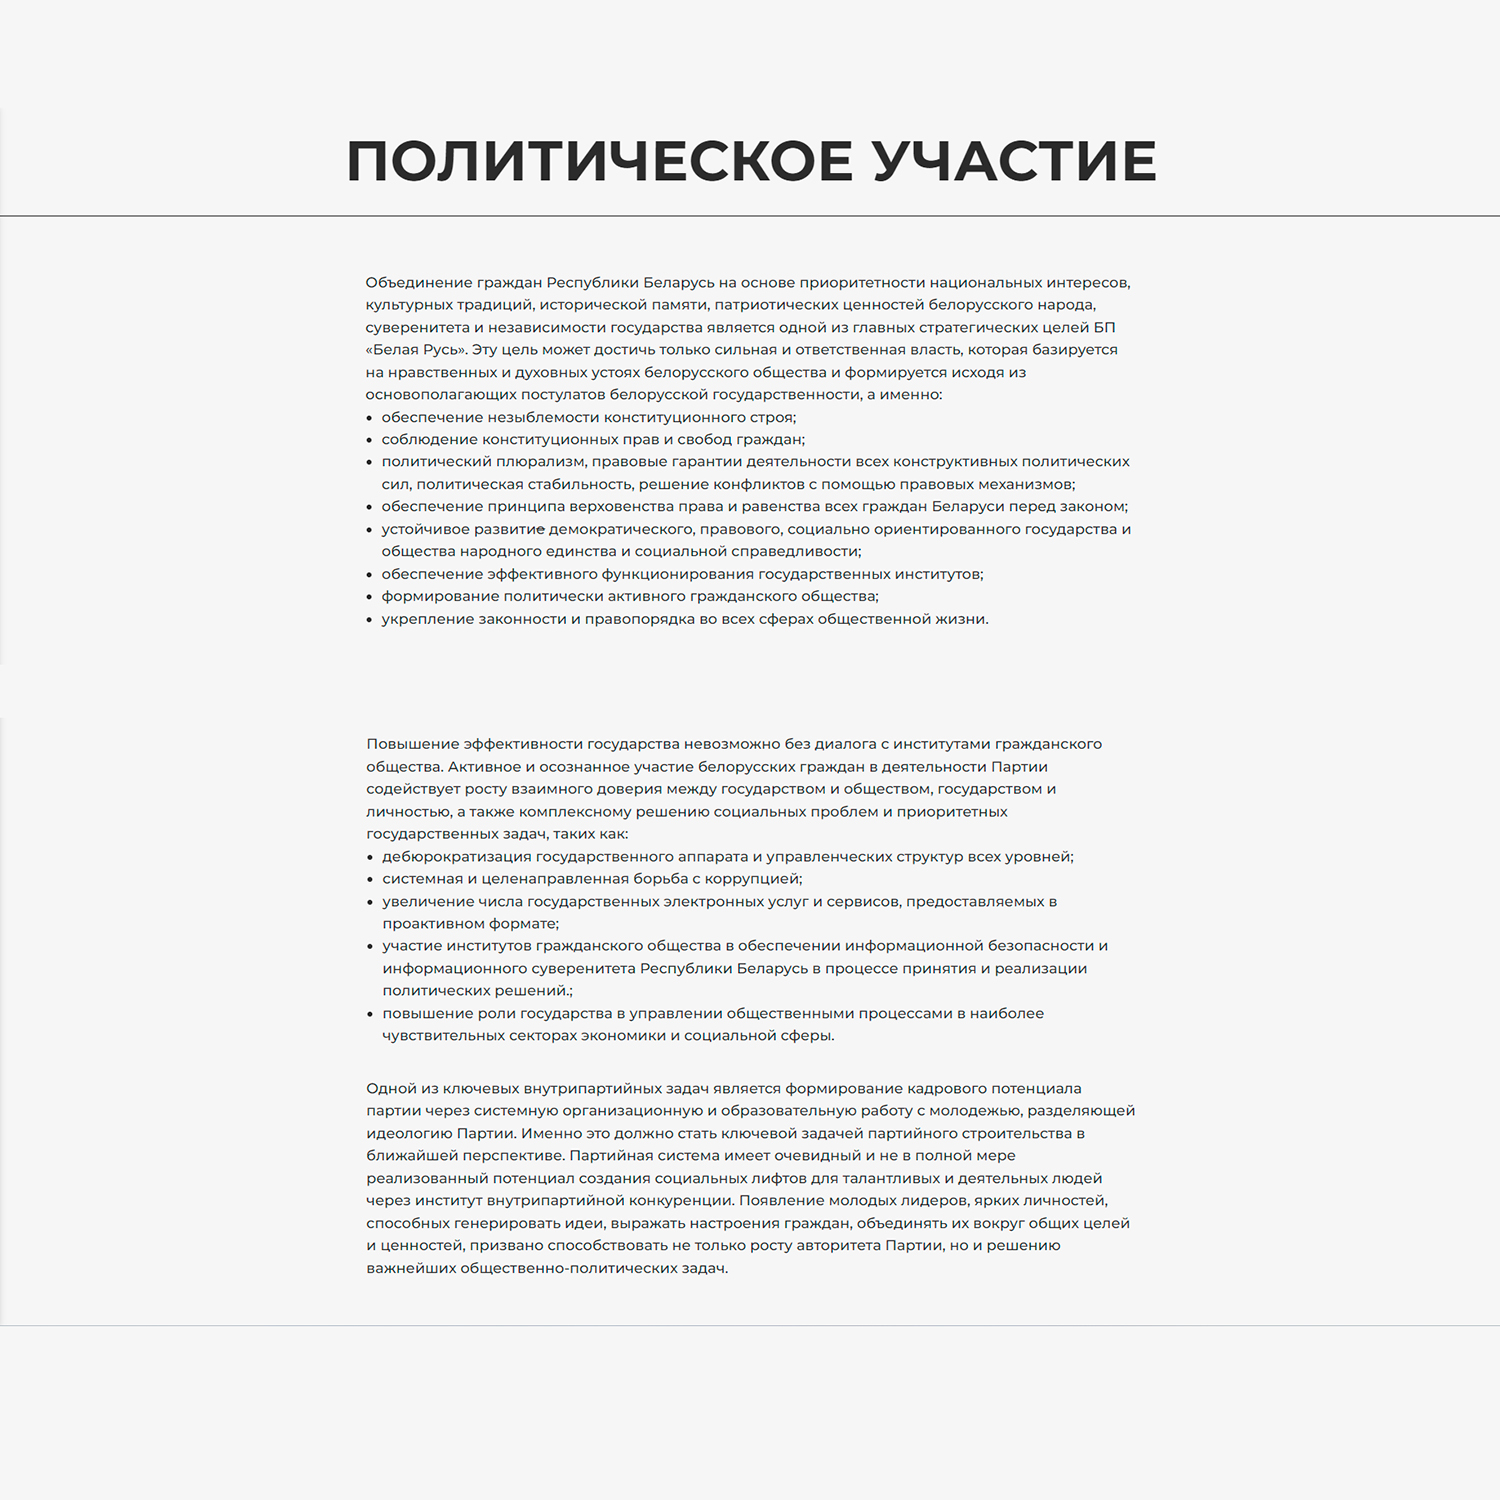 Выдержки из Устава и Программы с сайта Белорусской партии «Белая Русь» (Страница 7)